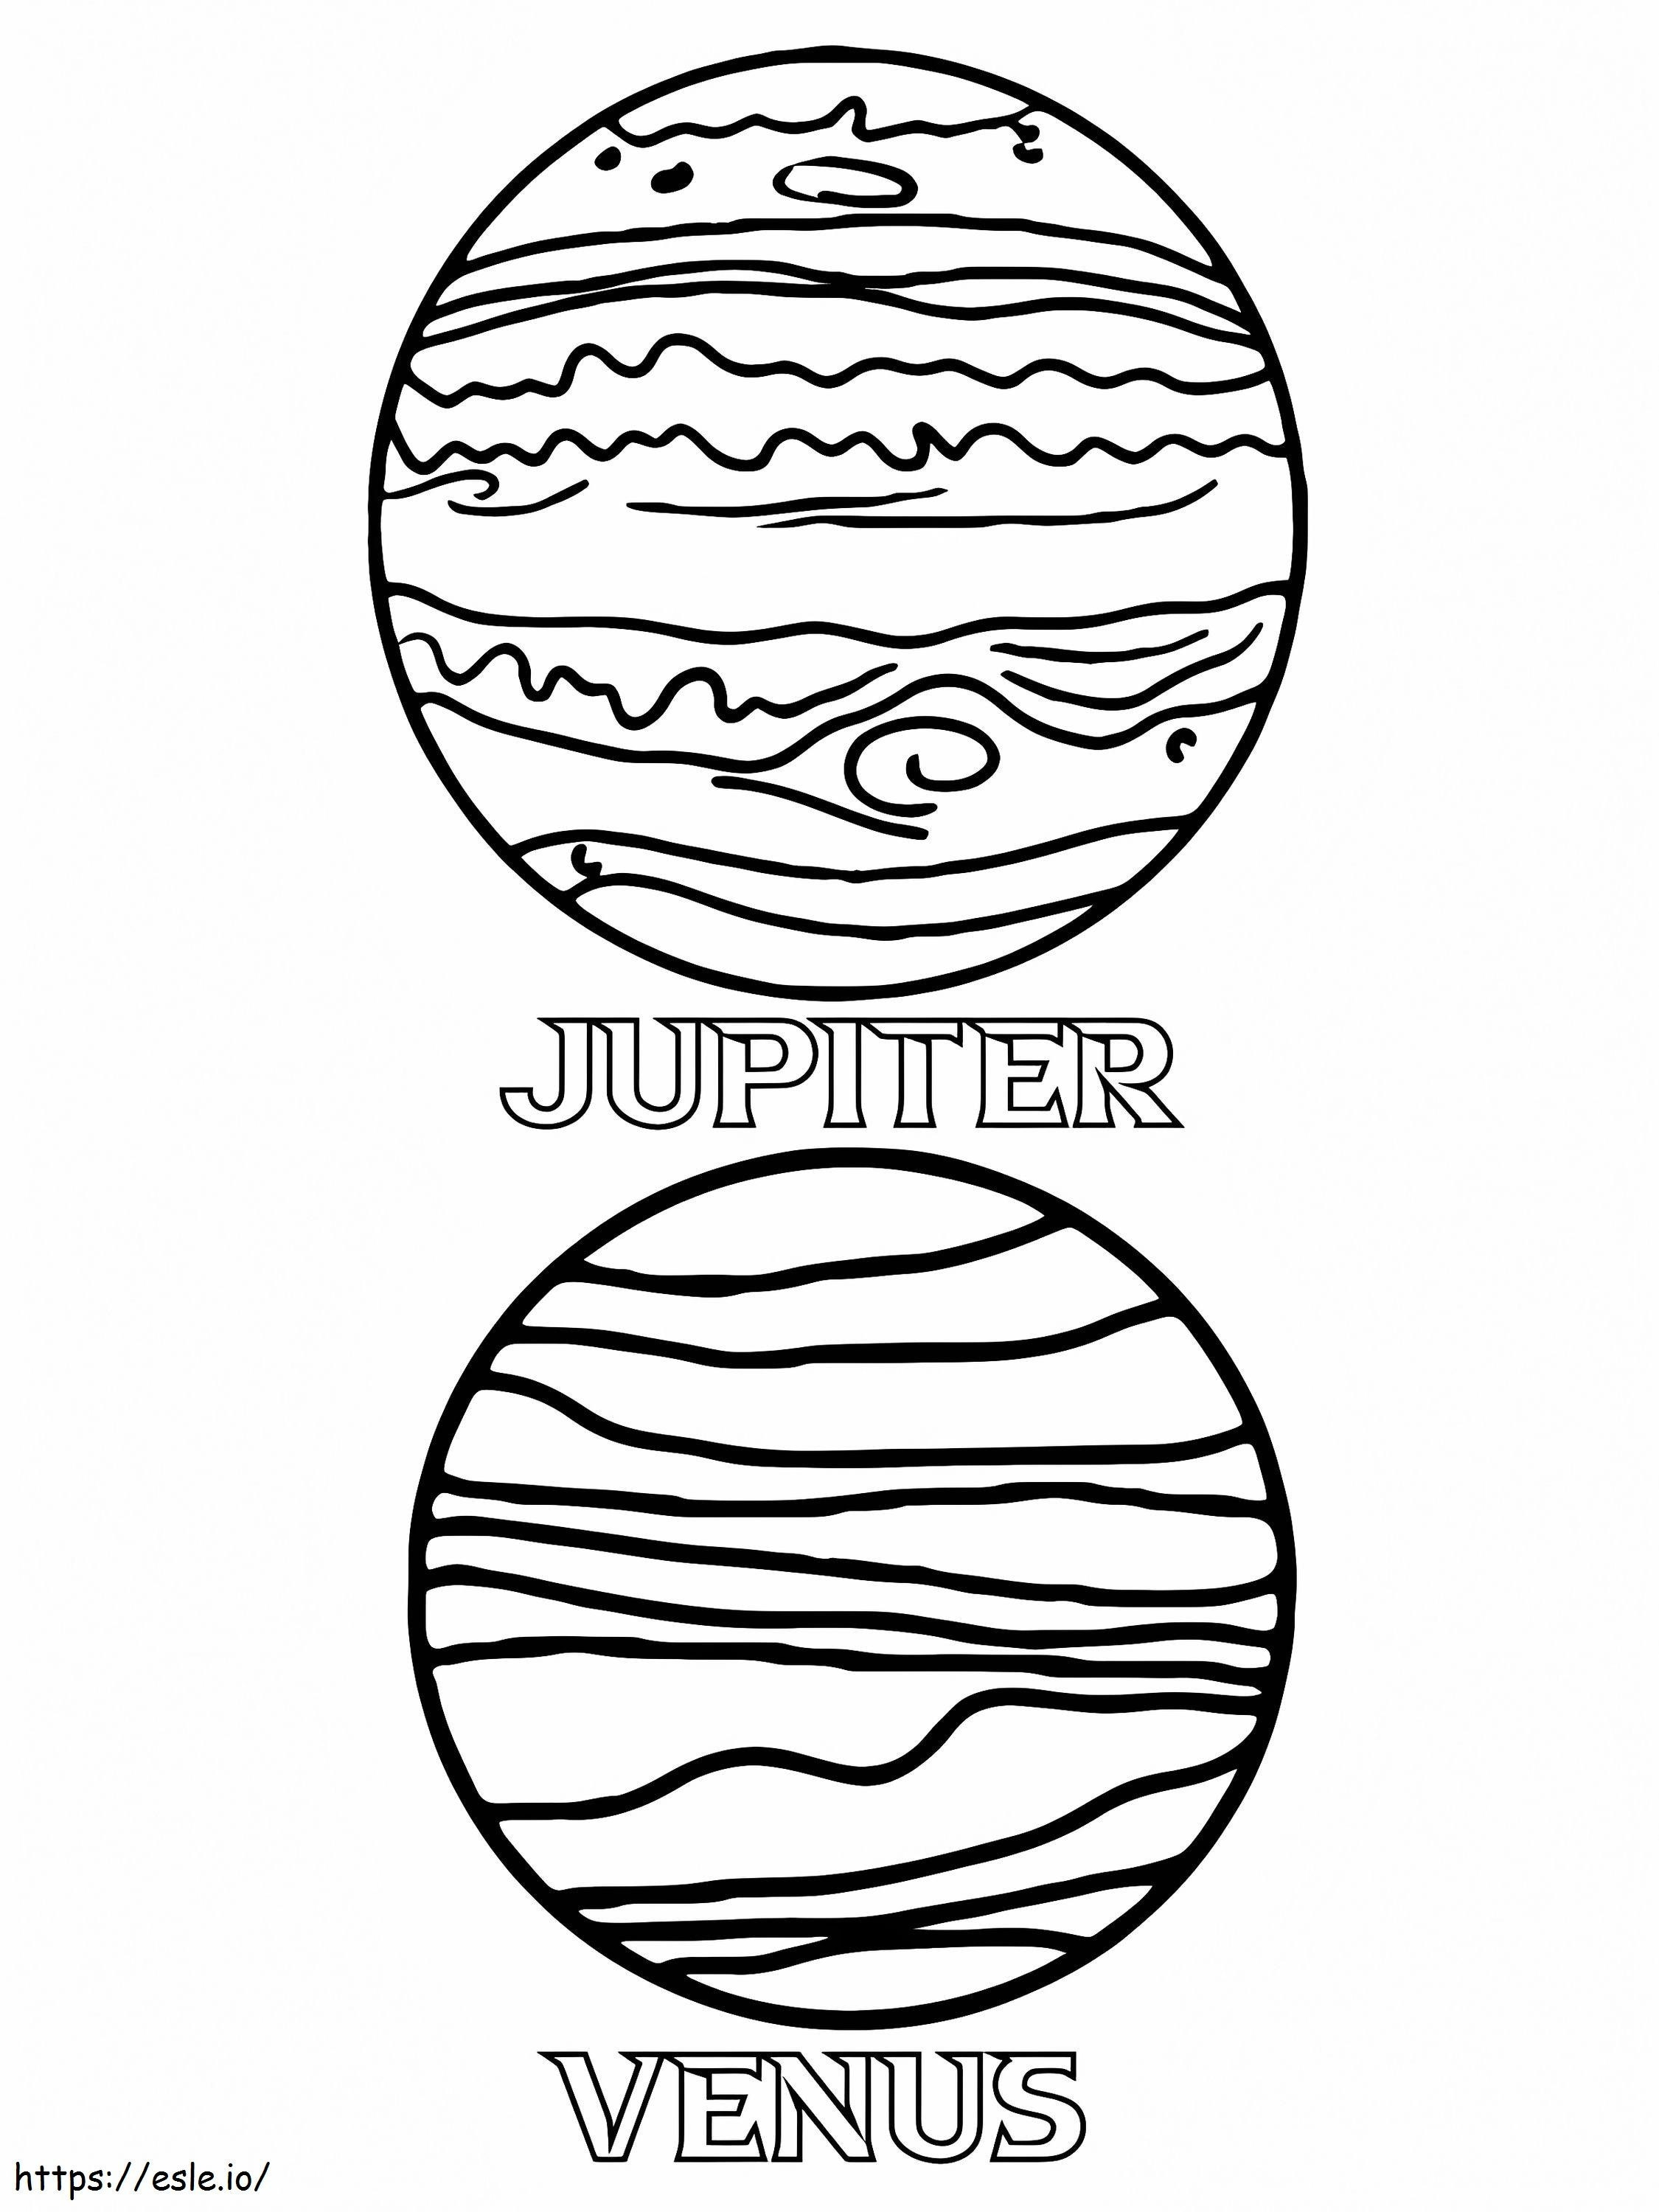 Jupiter și Venus de colorat